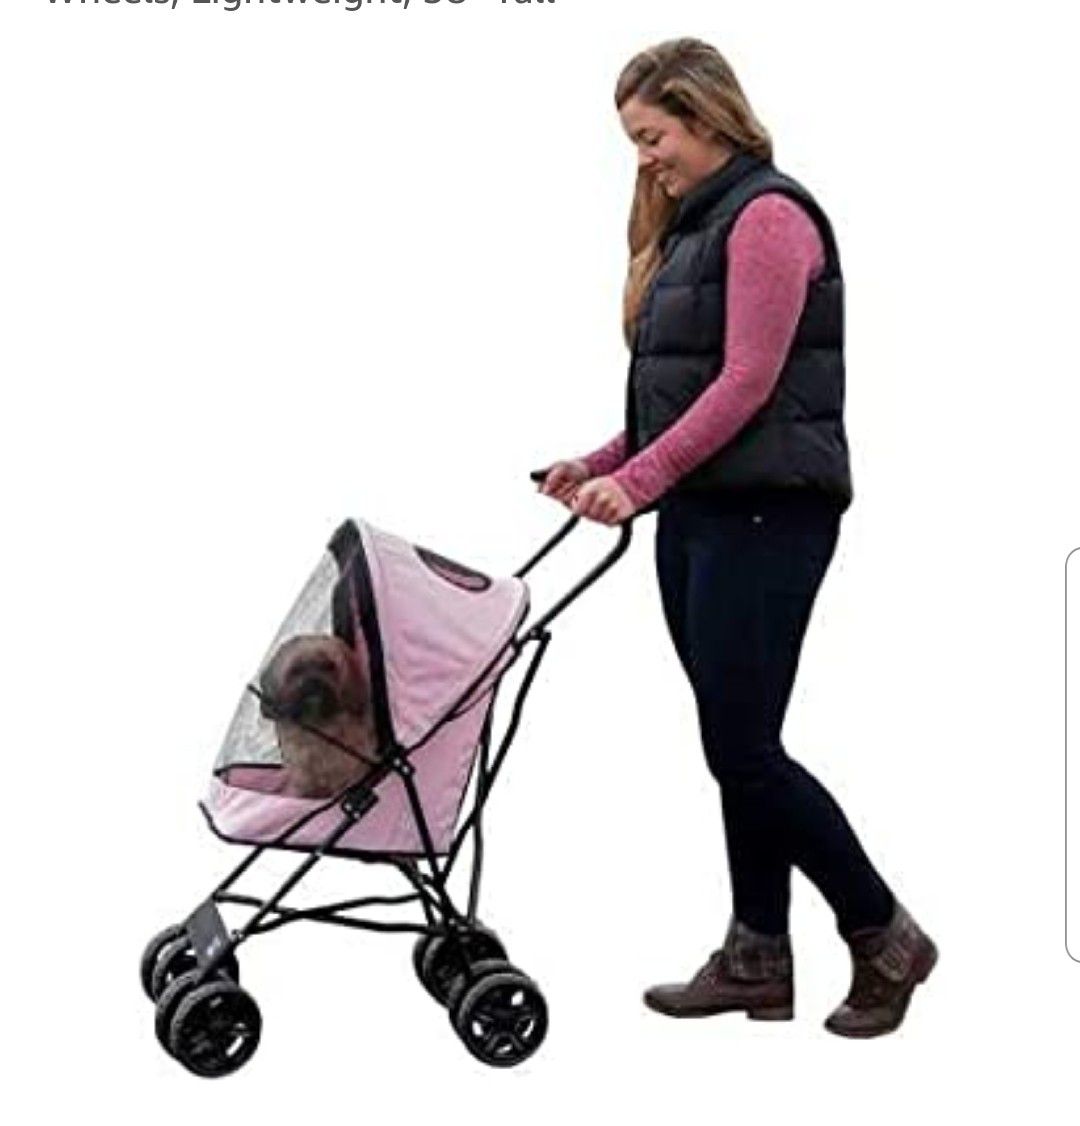 New Stroller for dog